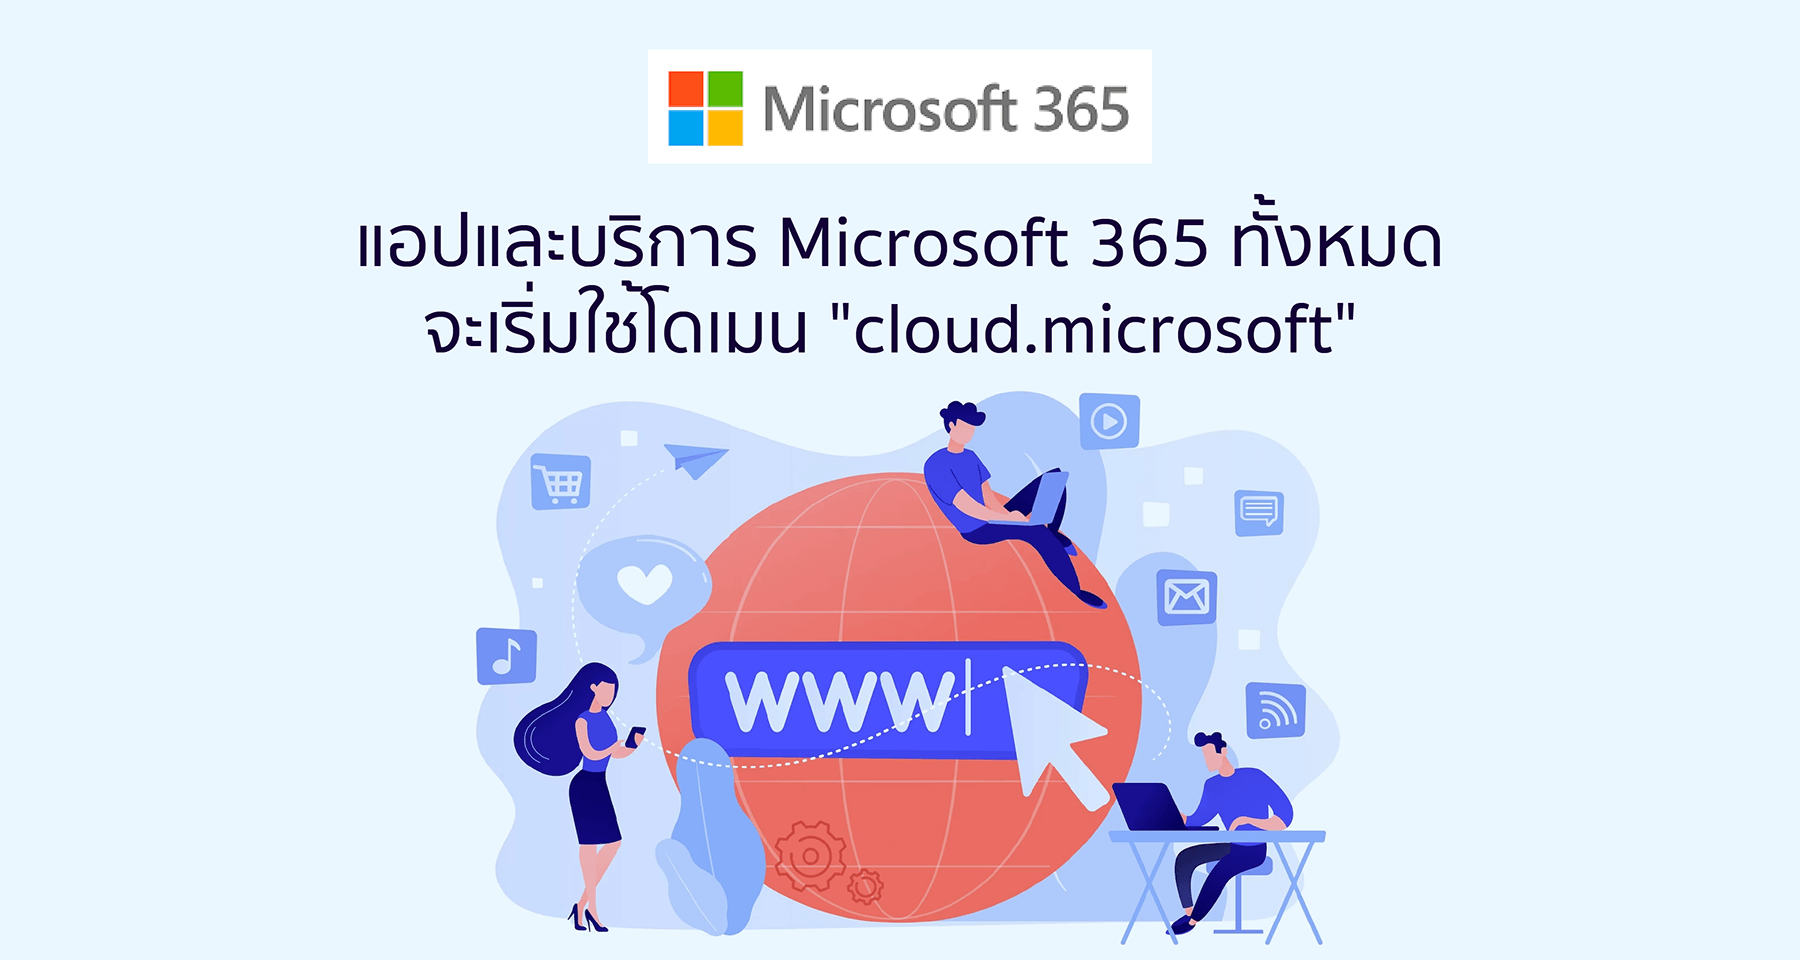 แอปและบริการ Microsoft 365 ทั้งหมดจะเริ่มใช้โดเมน cloud.microsoft